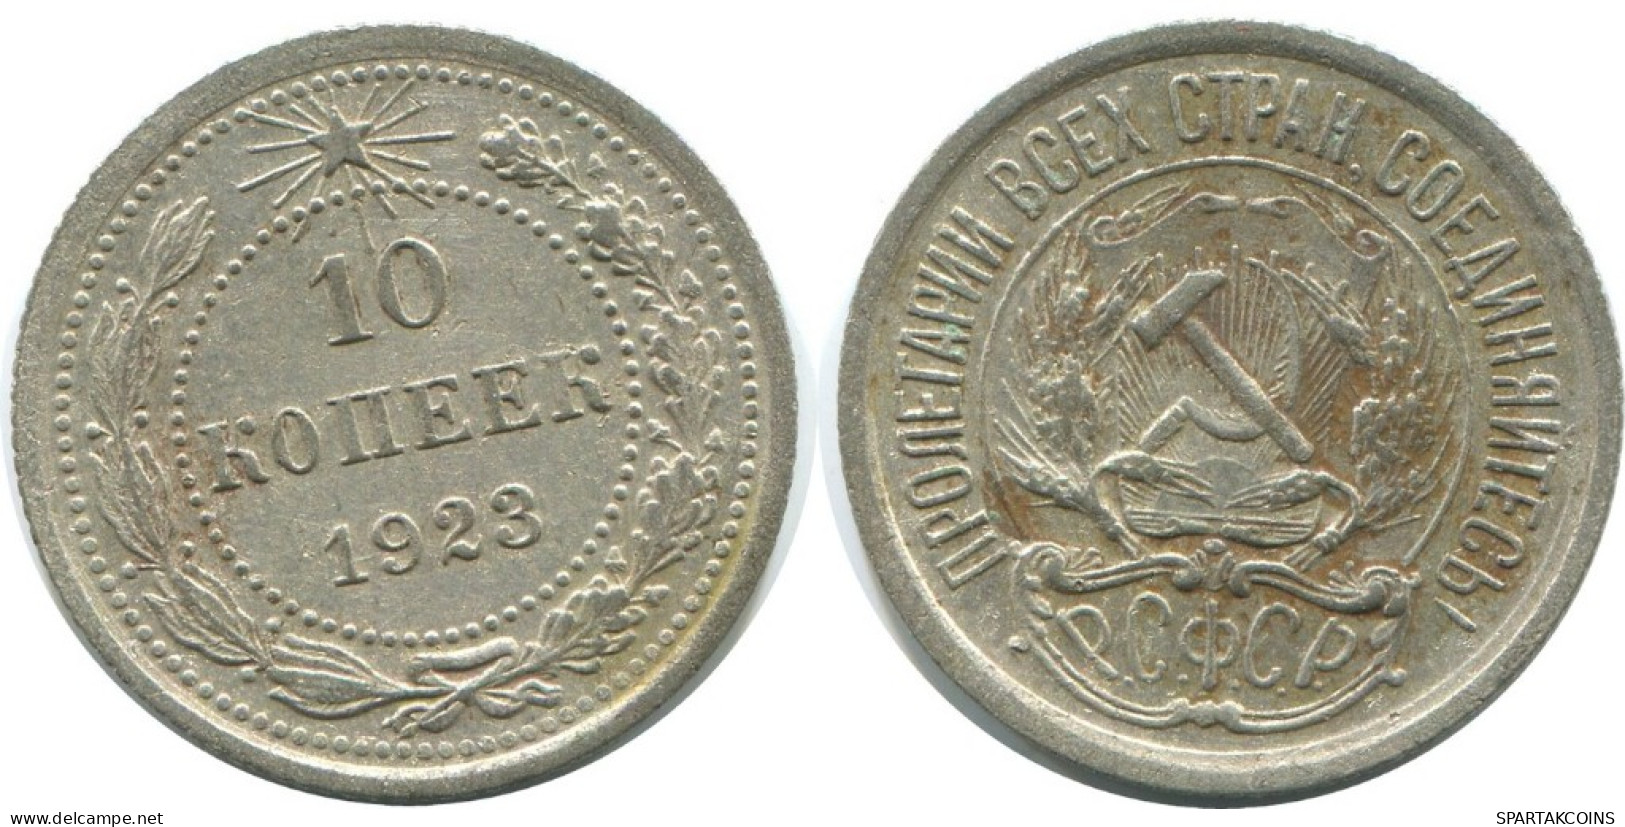 10 KOPEKS 1923 RUSSLAND RUSSIA RSFSR SILBER Münze HIGH GRADE #AE973.4.D.A - Russia